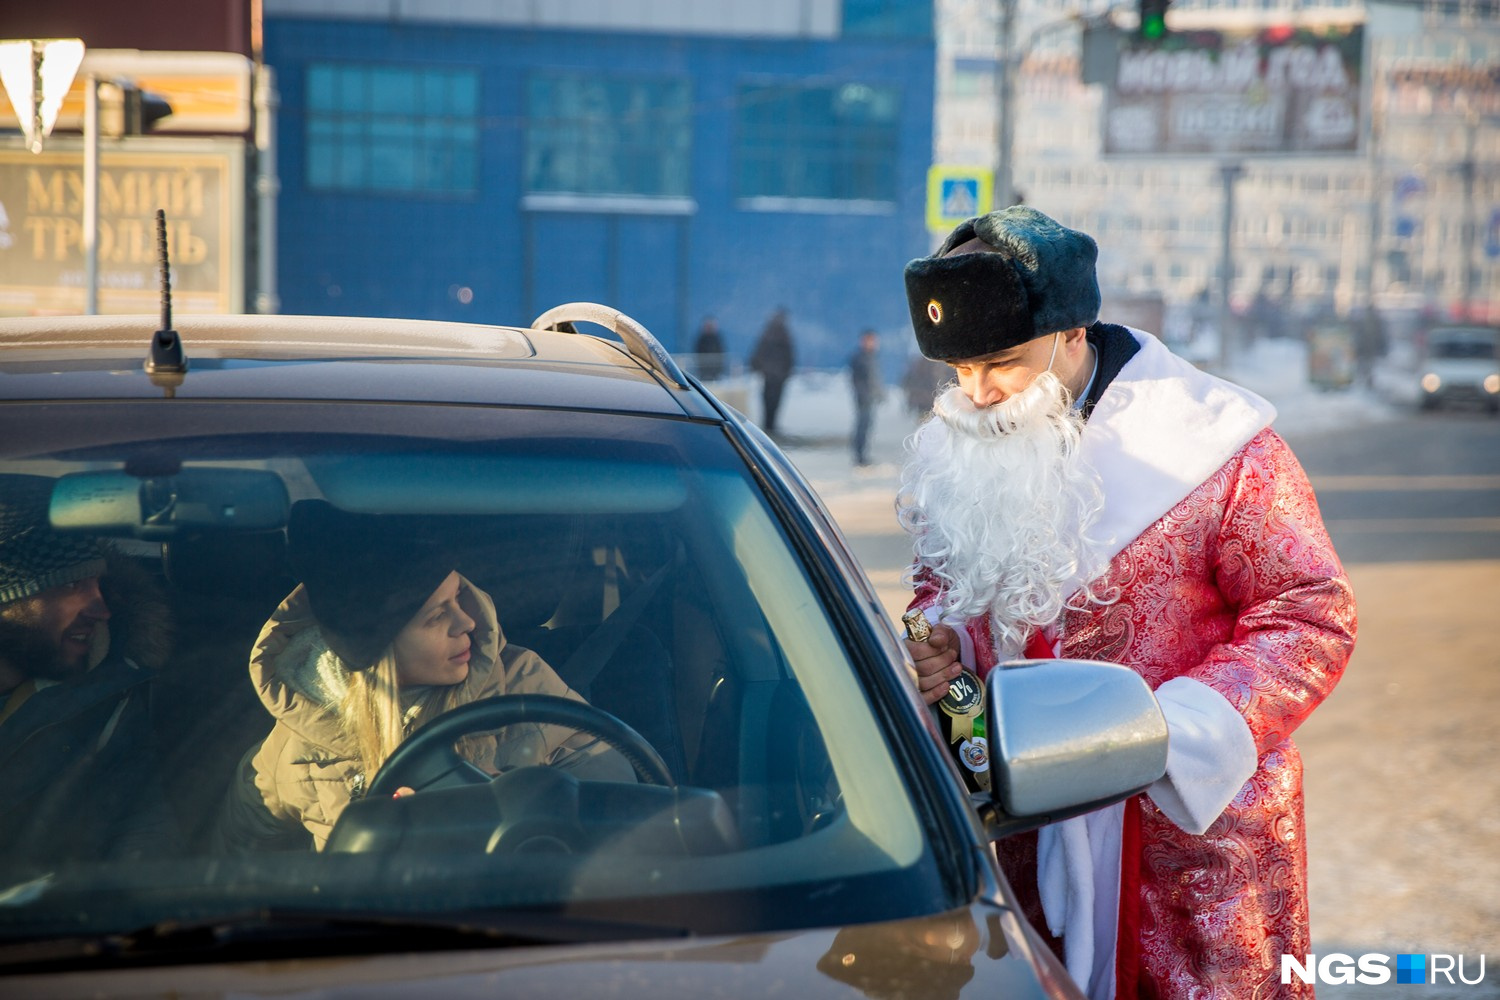 Вместо красного колпака Дед Мороз носил форменную шапку сотрудников МВД